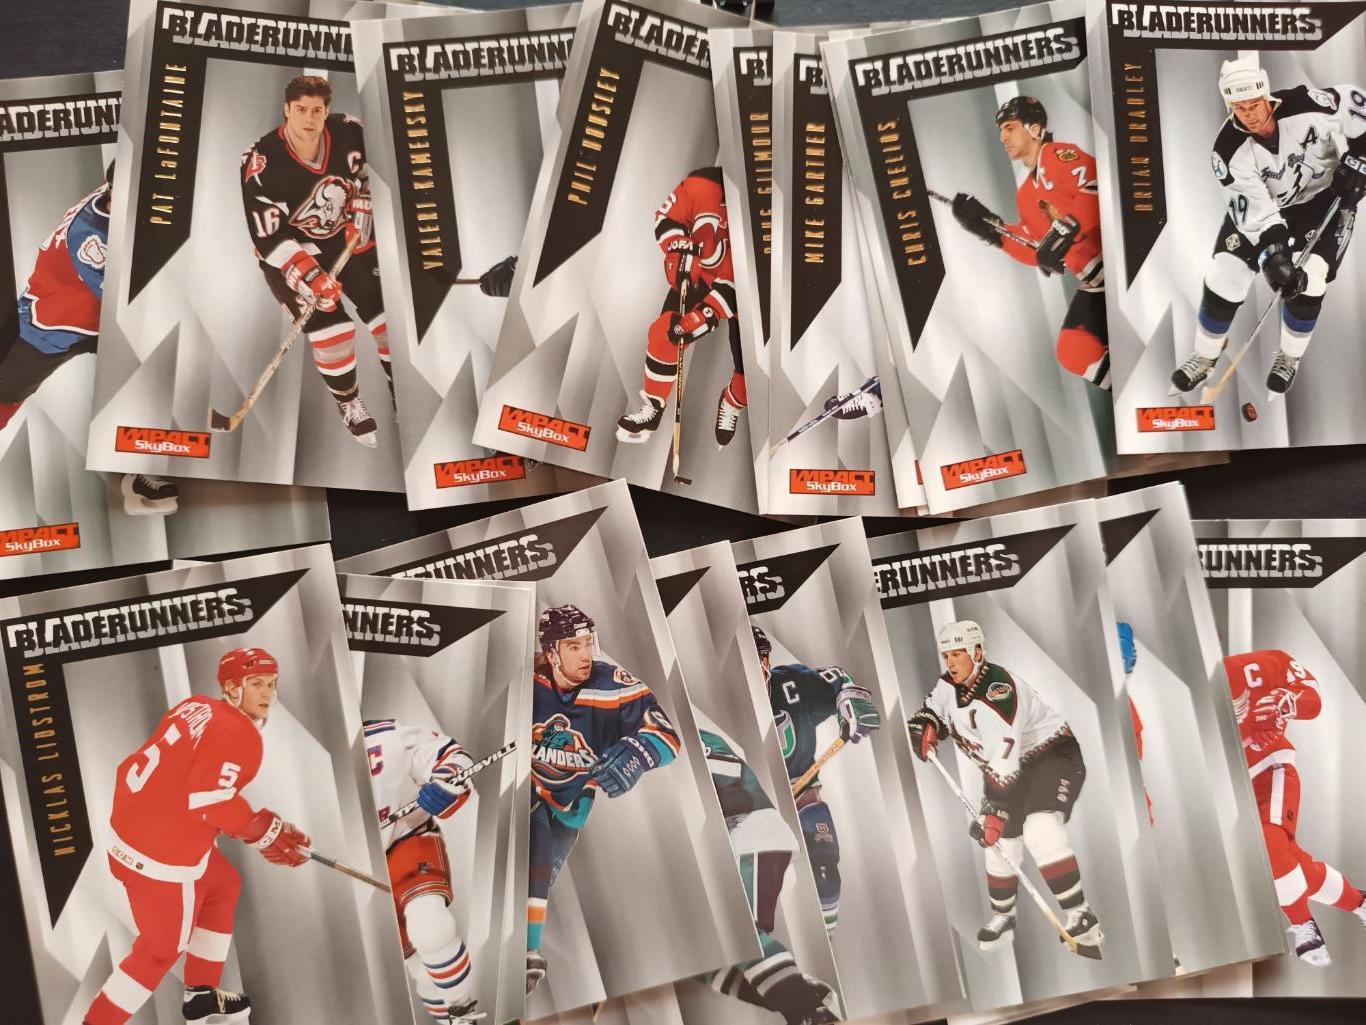 ХОККЕЙ НАБОР КАРТОЧЕК НХЛ IMPACT SKYBOX 1996-97 NHL HOCKEY CARD FULL SET #1-200 4